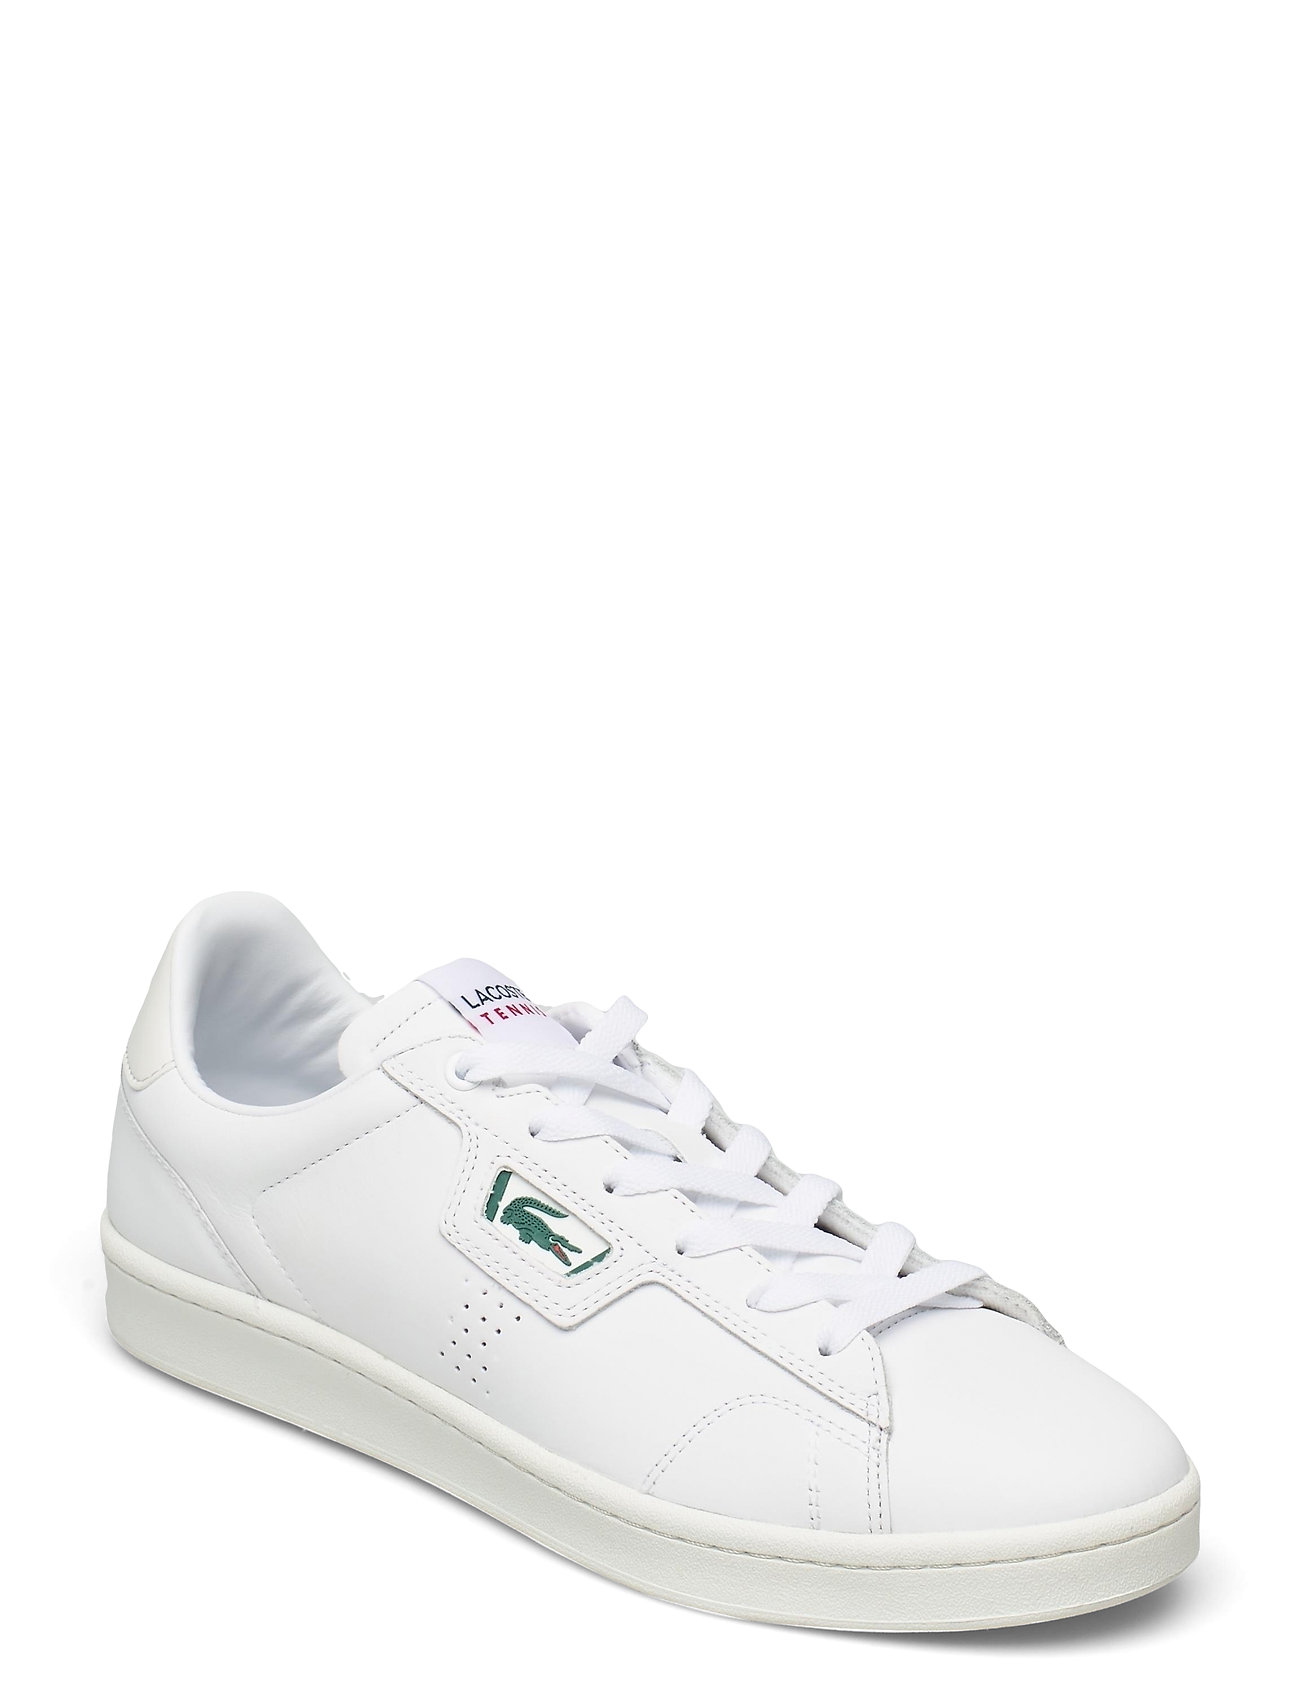 Masters Classic 0721 Matalavartiset Sneakerit Tennarit Valkoinen Lacoste Shoes